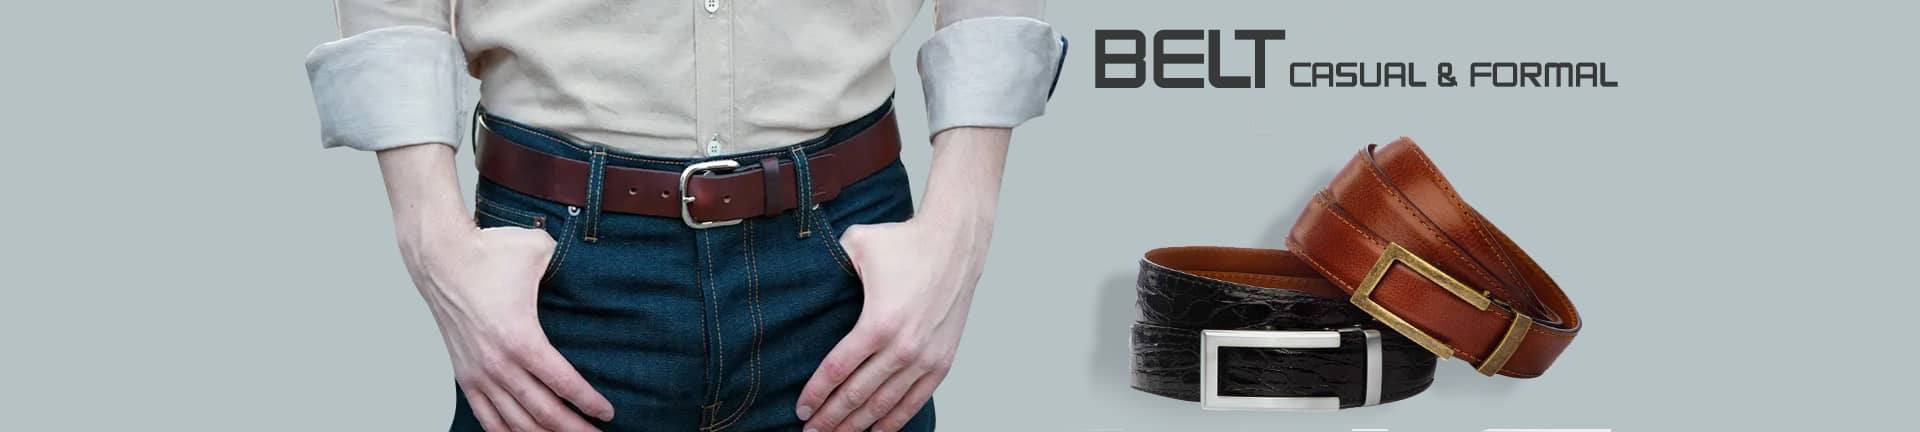 Buy Online Casual & Formal Belts For Men at Best Price - Kayazar